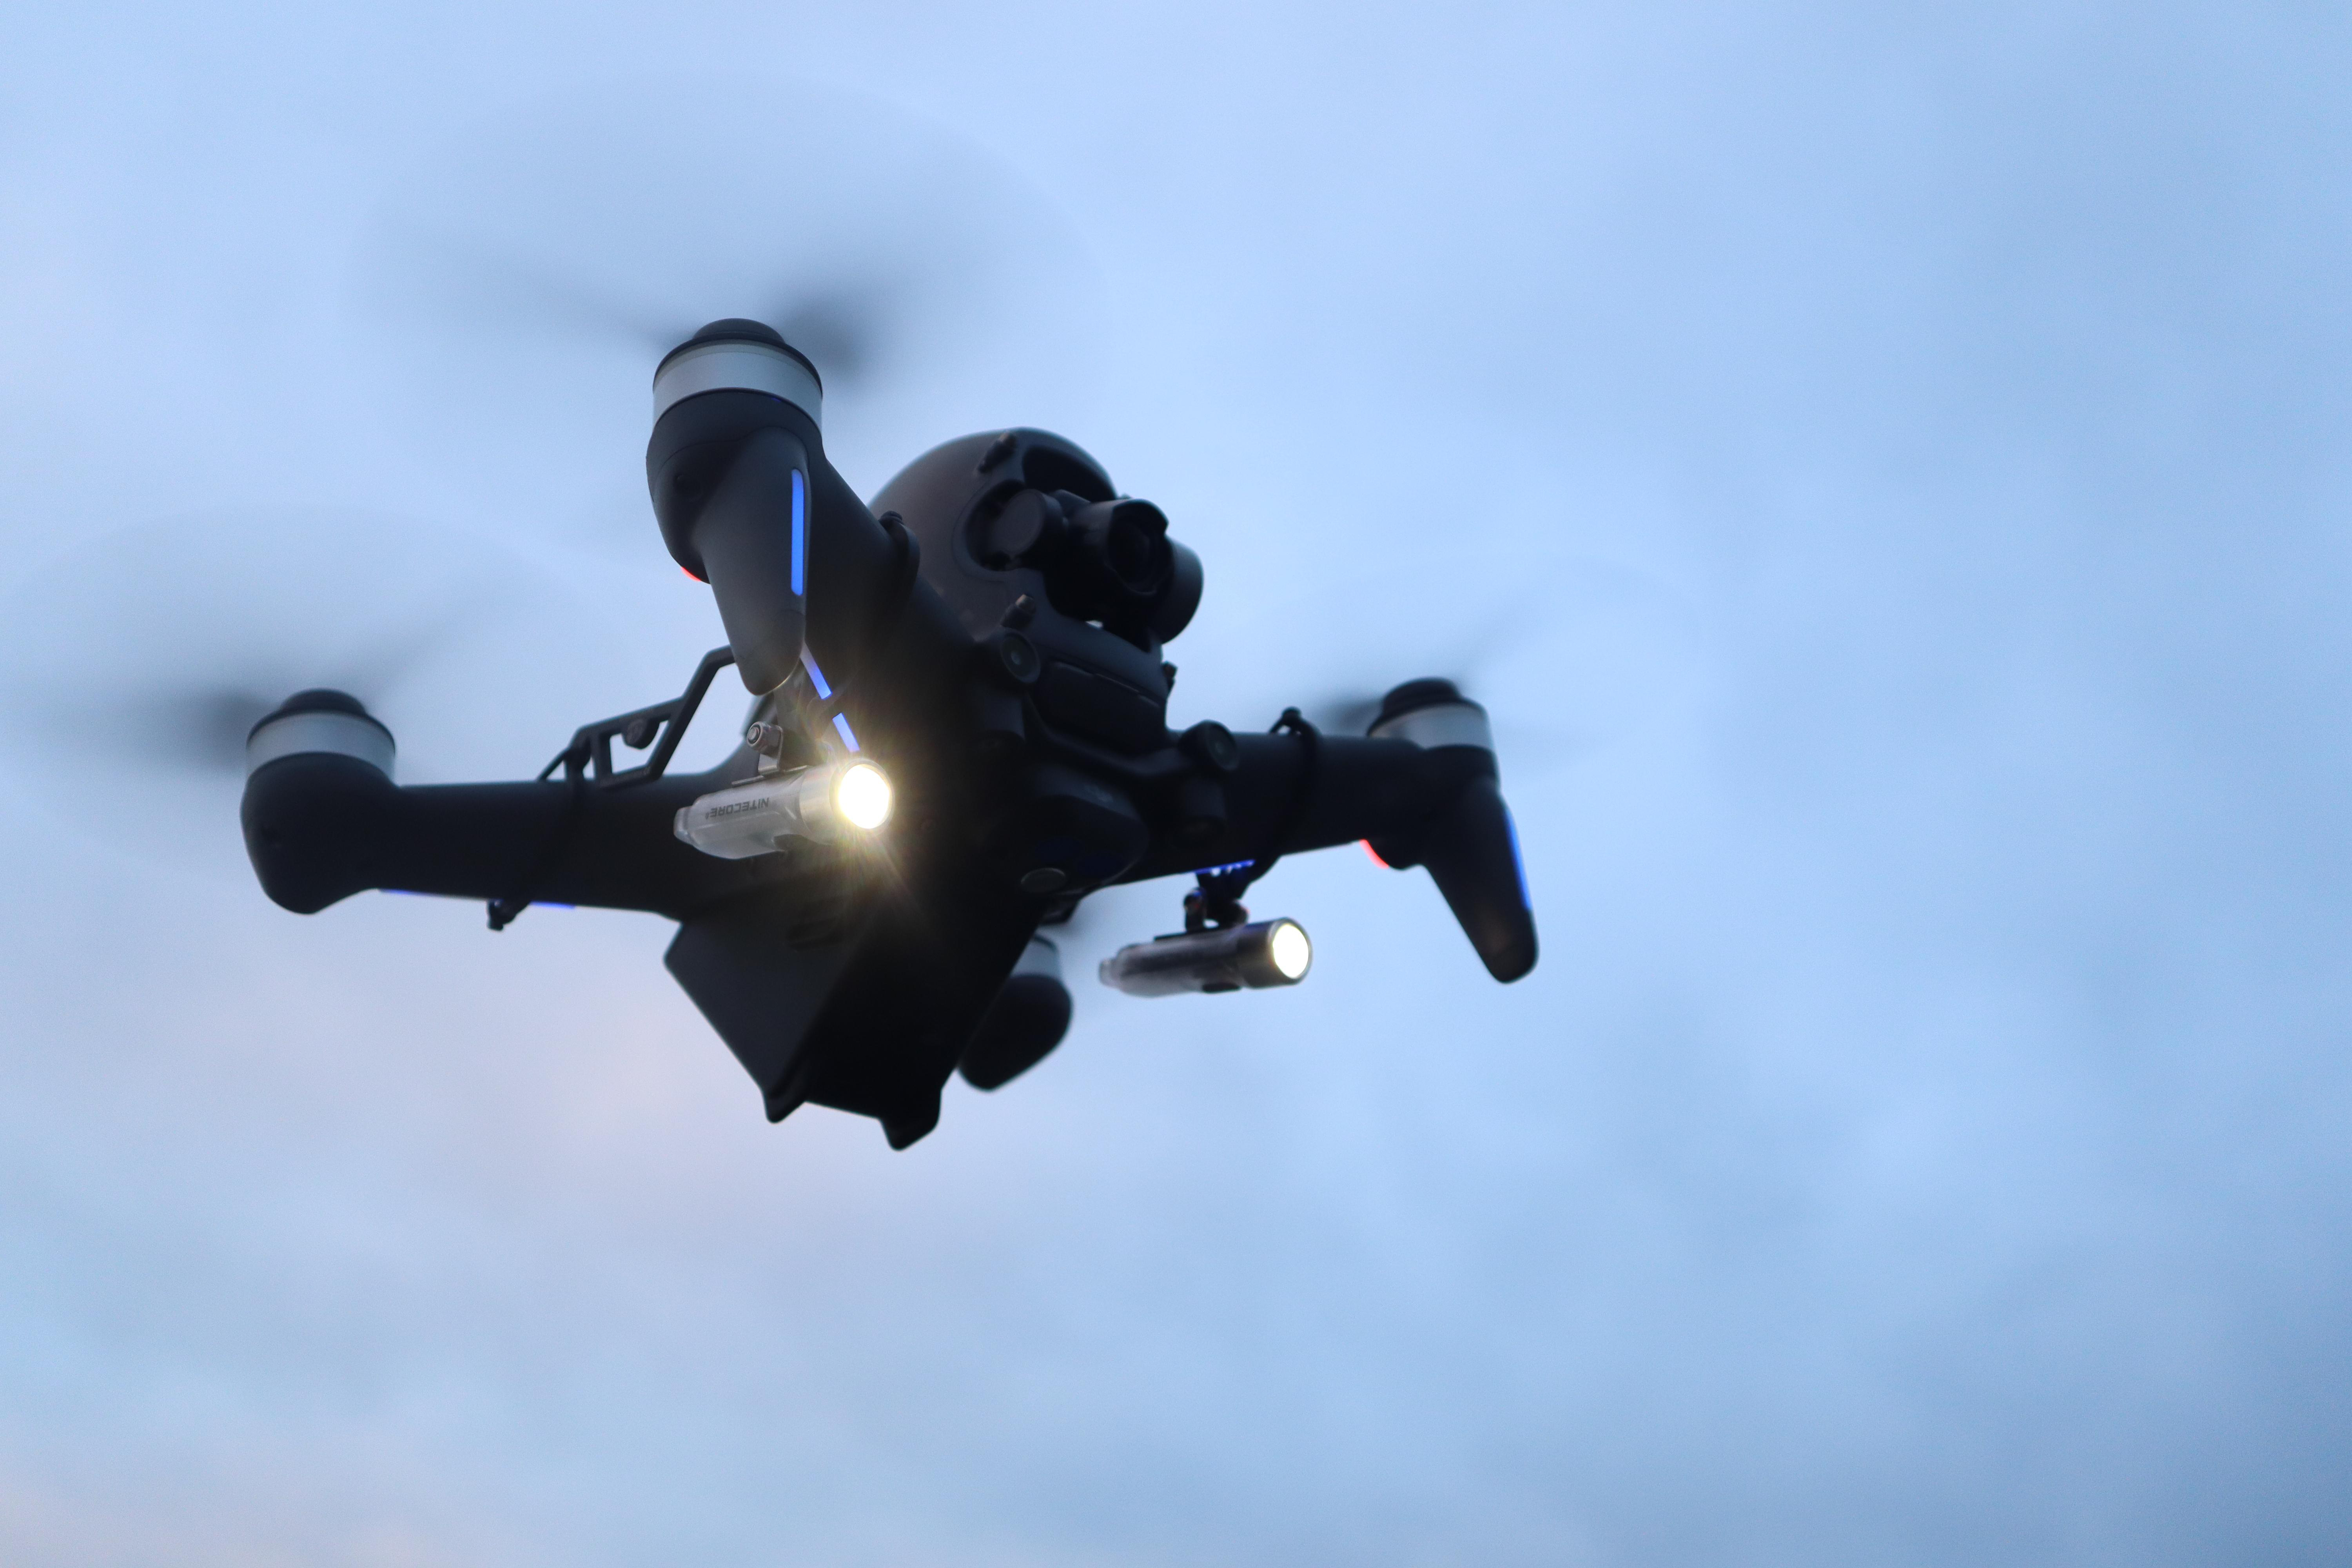 ROBOTERWERK Roboterwerk SELFIE Dual, DJI Drohnen für Beleuchtungssystem, 300 Transparent/Schwarz FPV